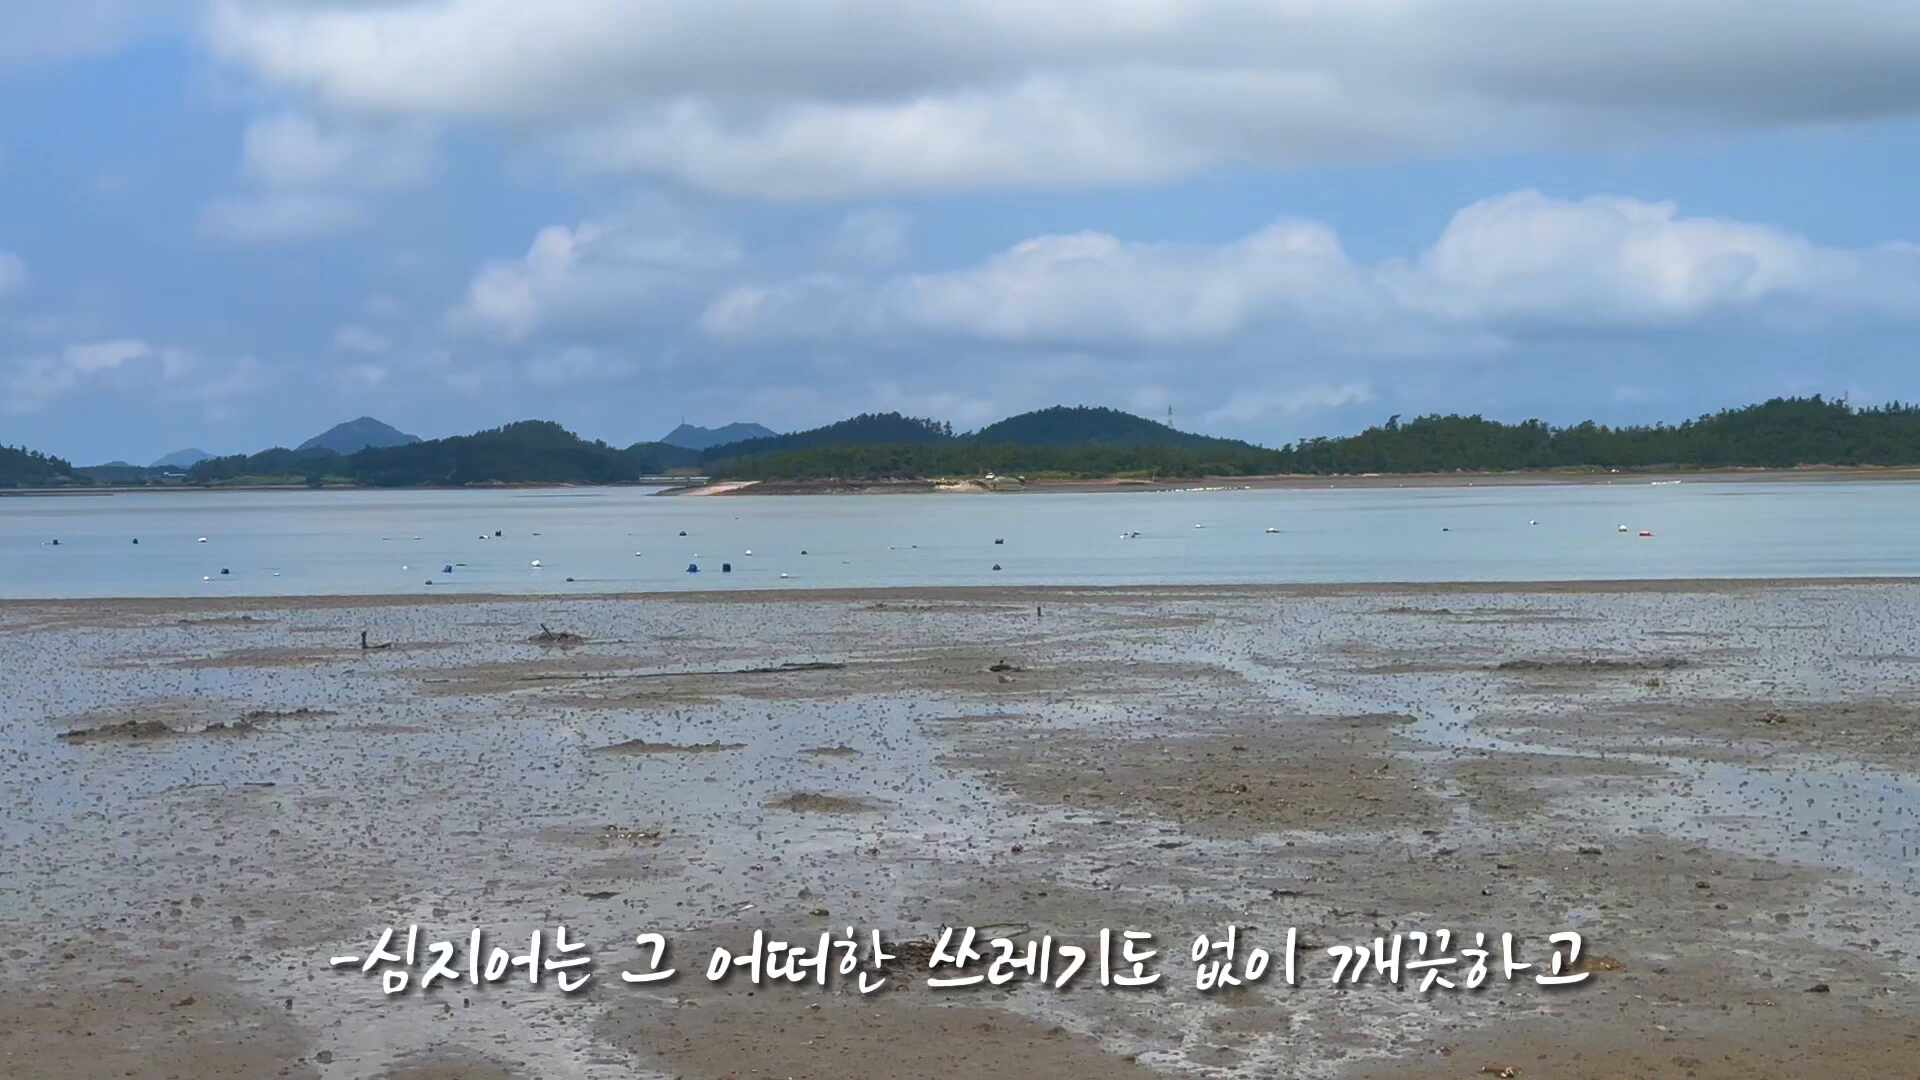 제 10회 영상왕 콘테스트 공모전 - 이주영 - 쓰레기 글로벌 공익광고